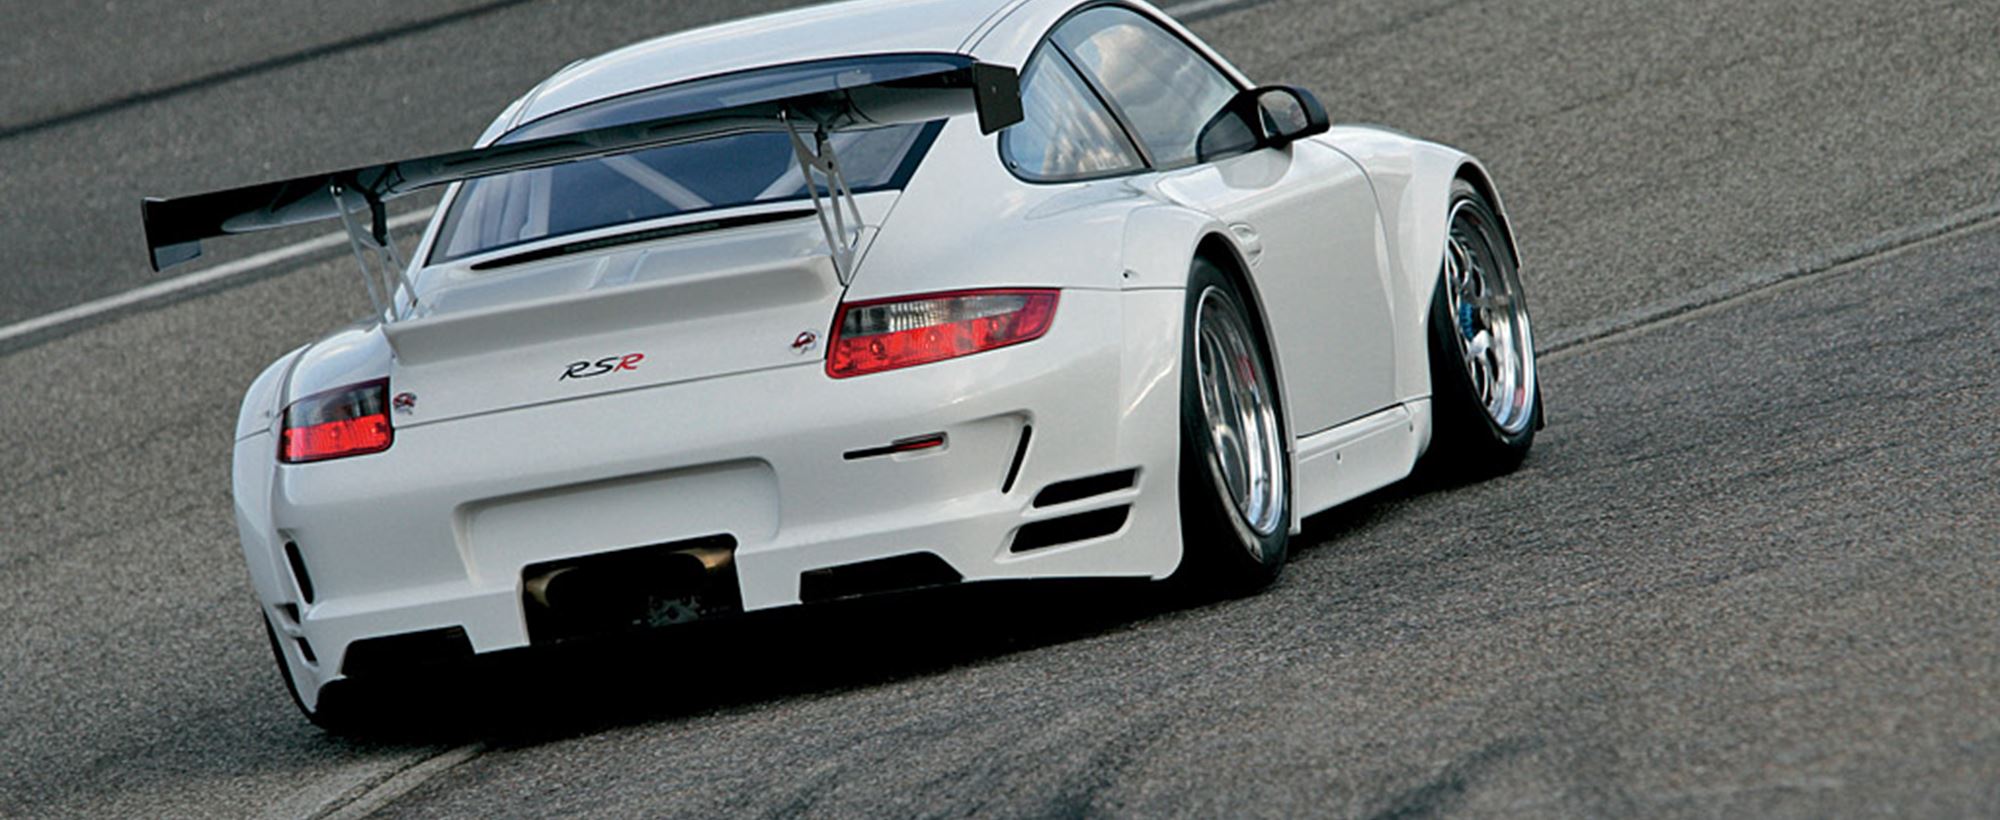 2008_Porsche_911GT3RSR6.jpg